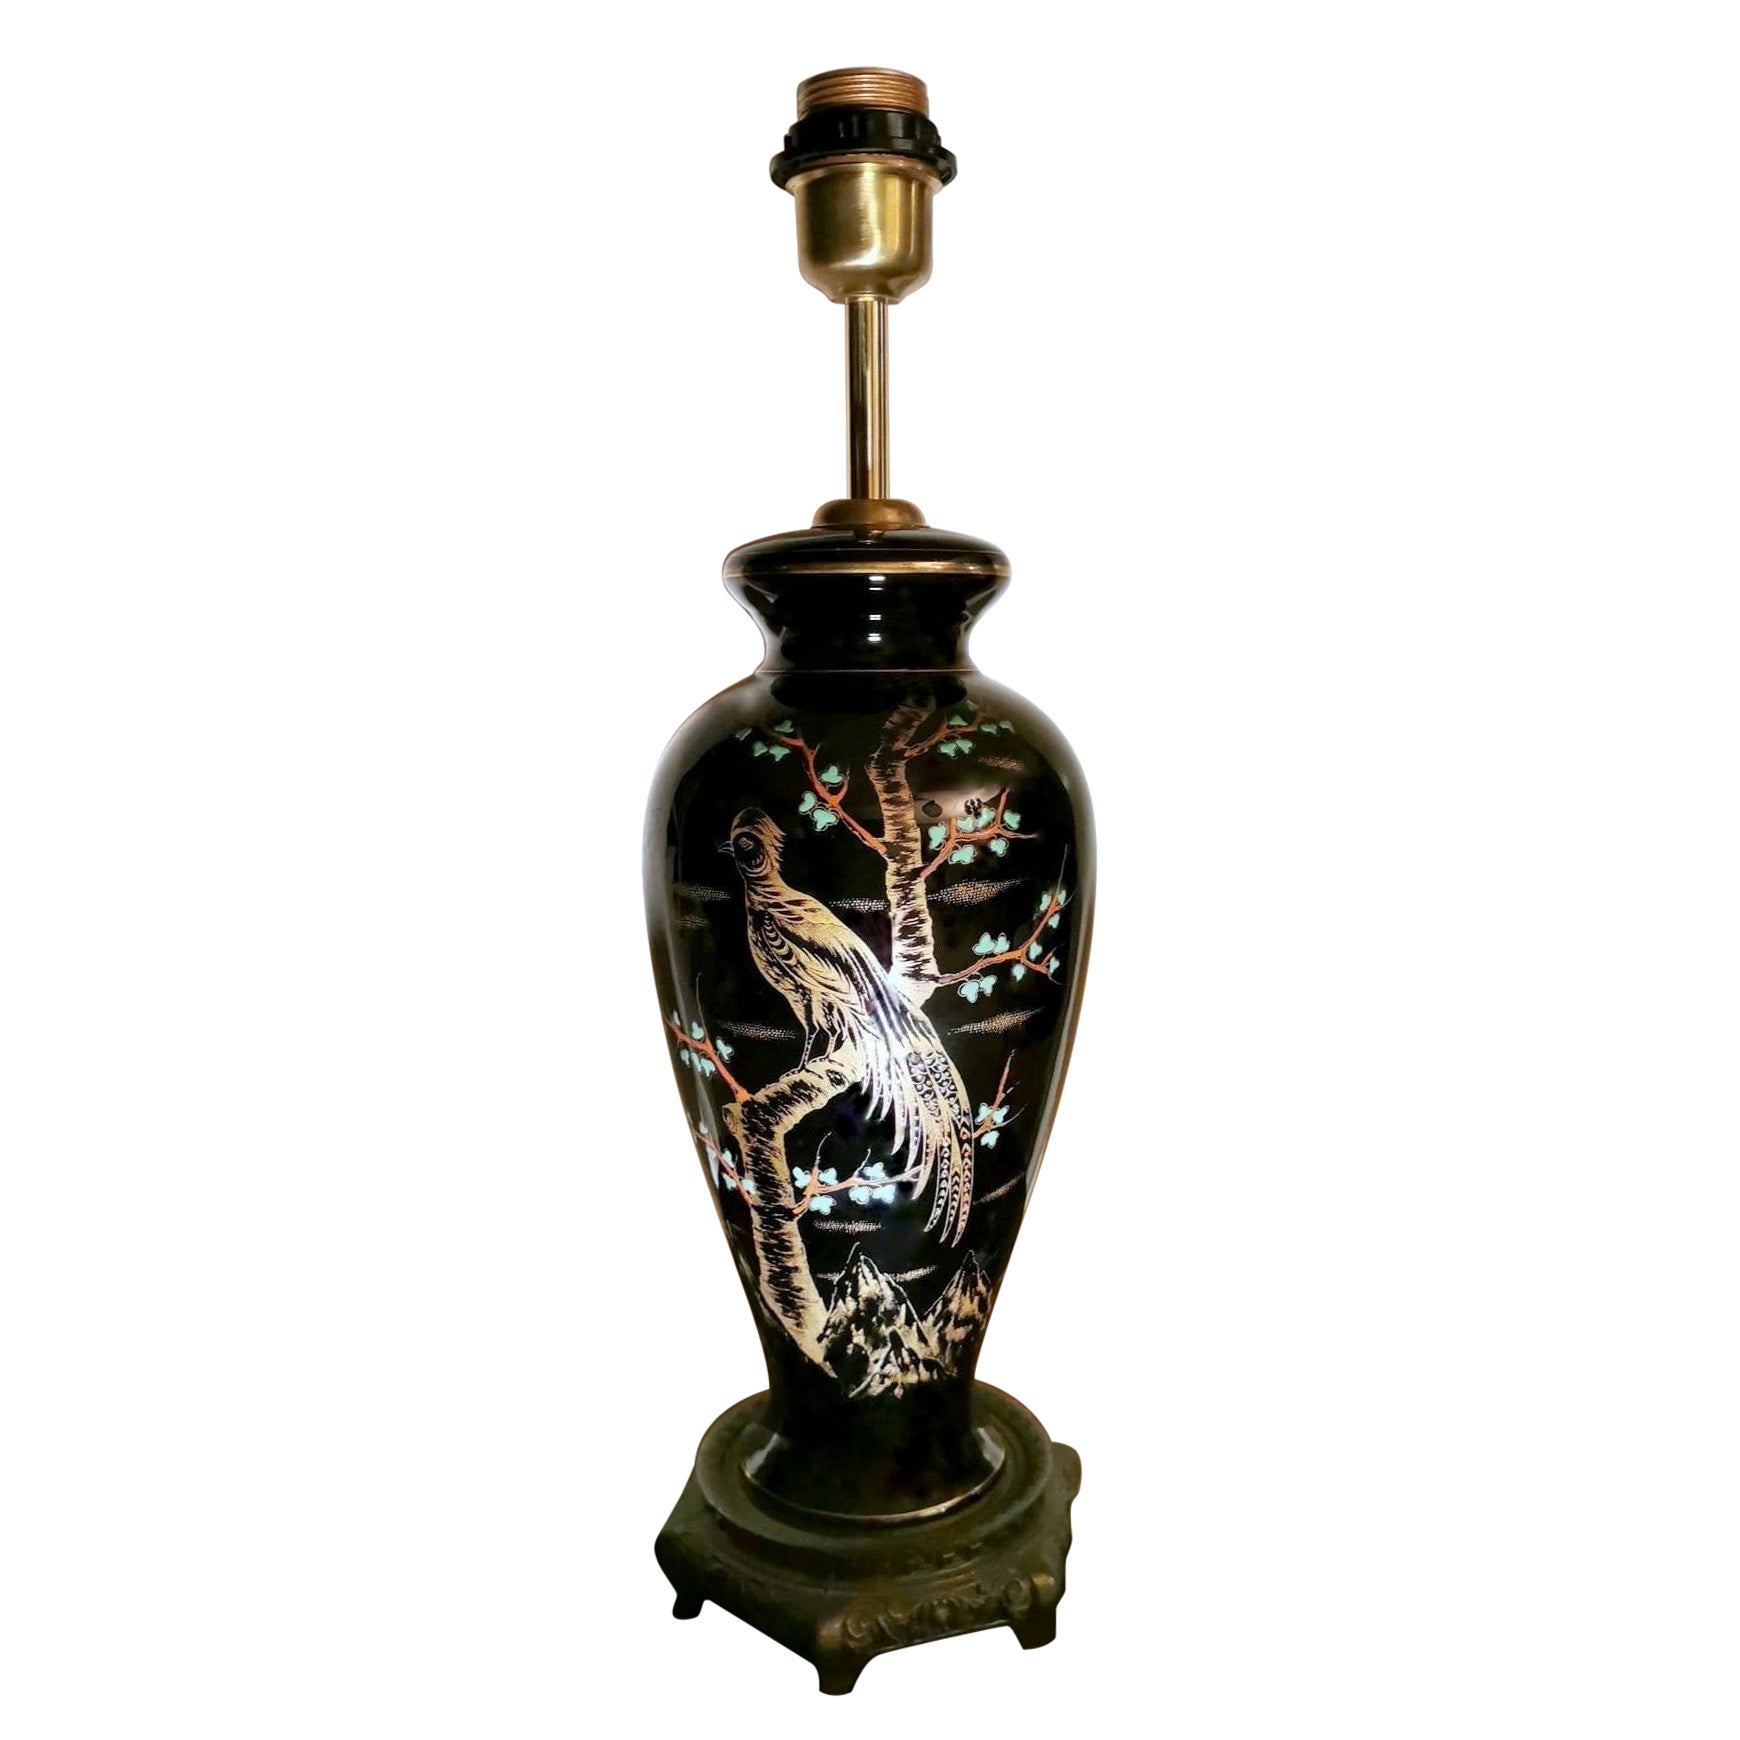 Rare lampe française en porcelaine polie noire peinte à la main